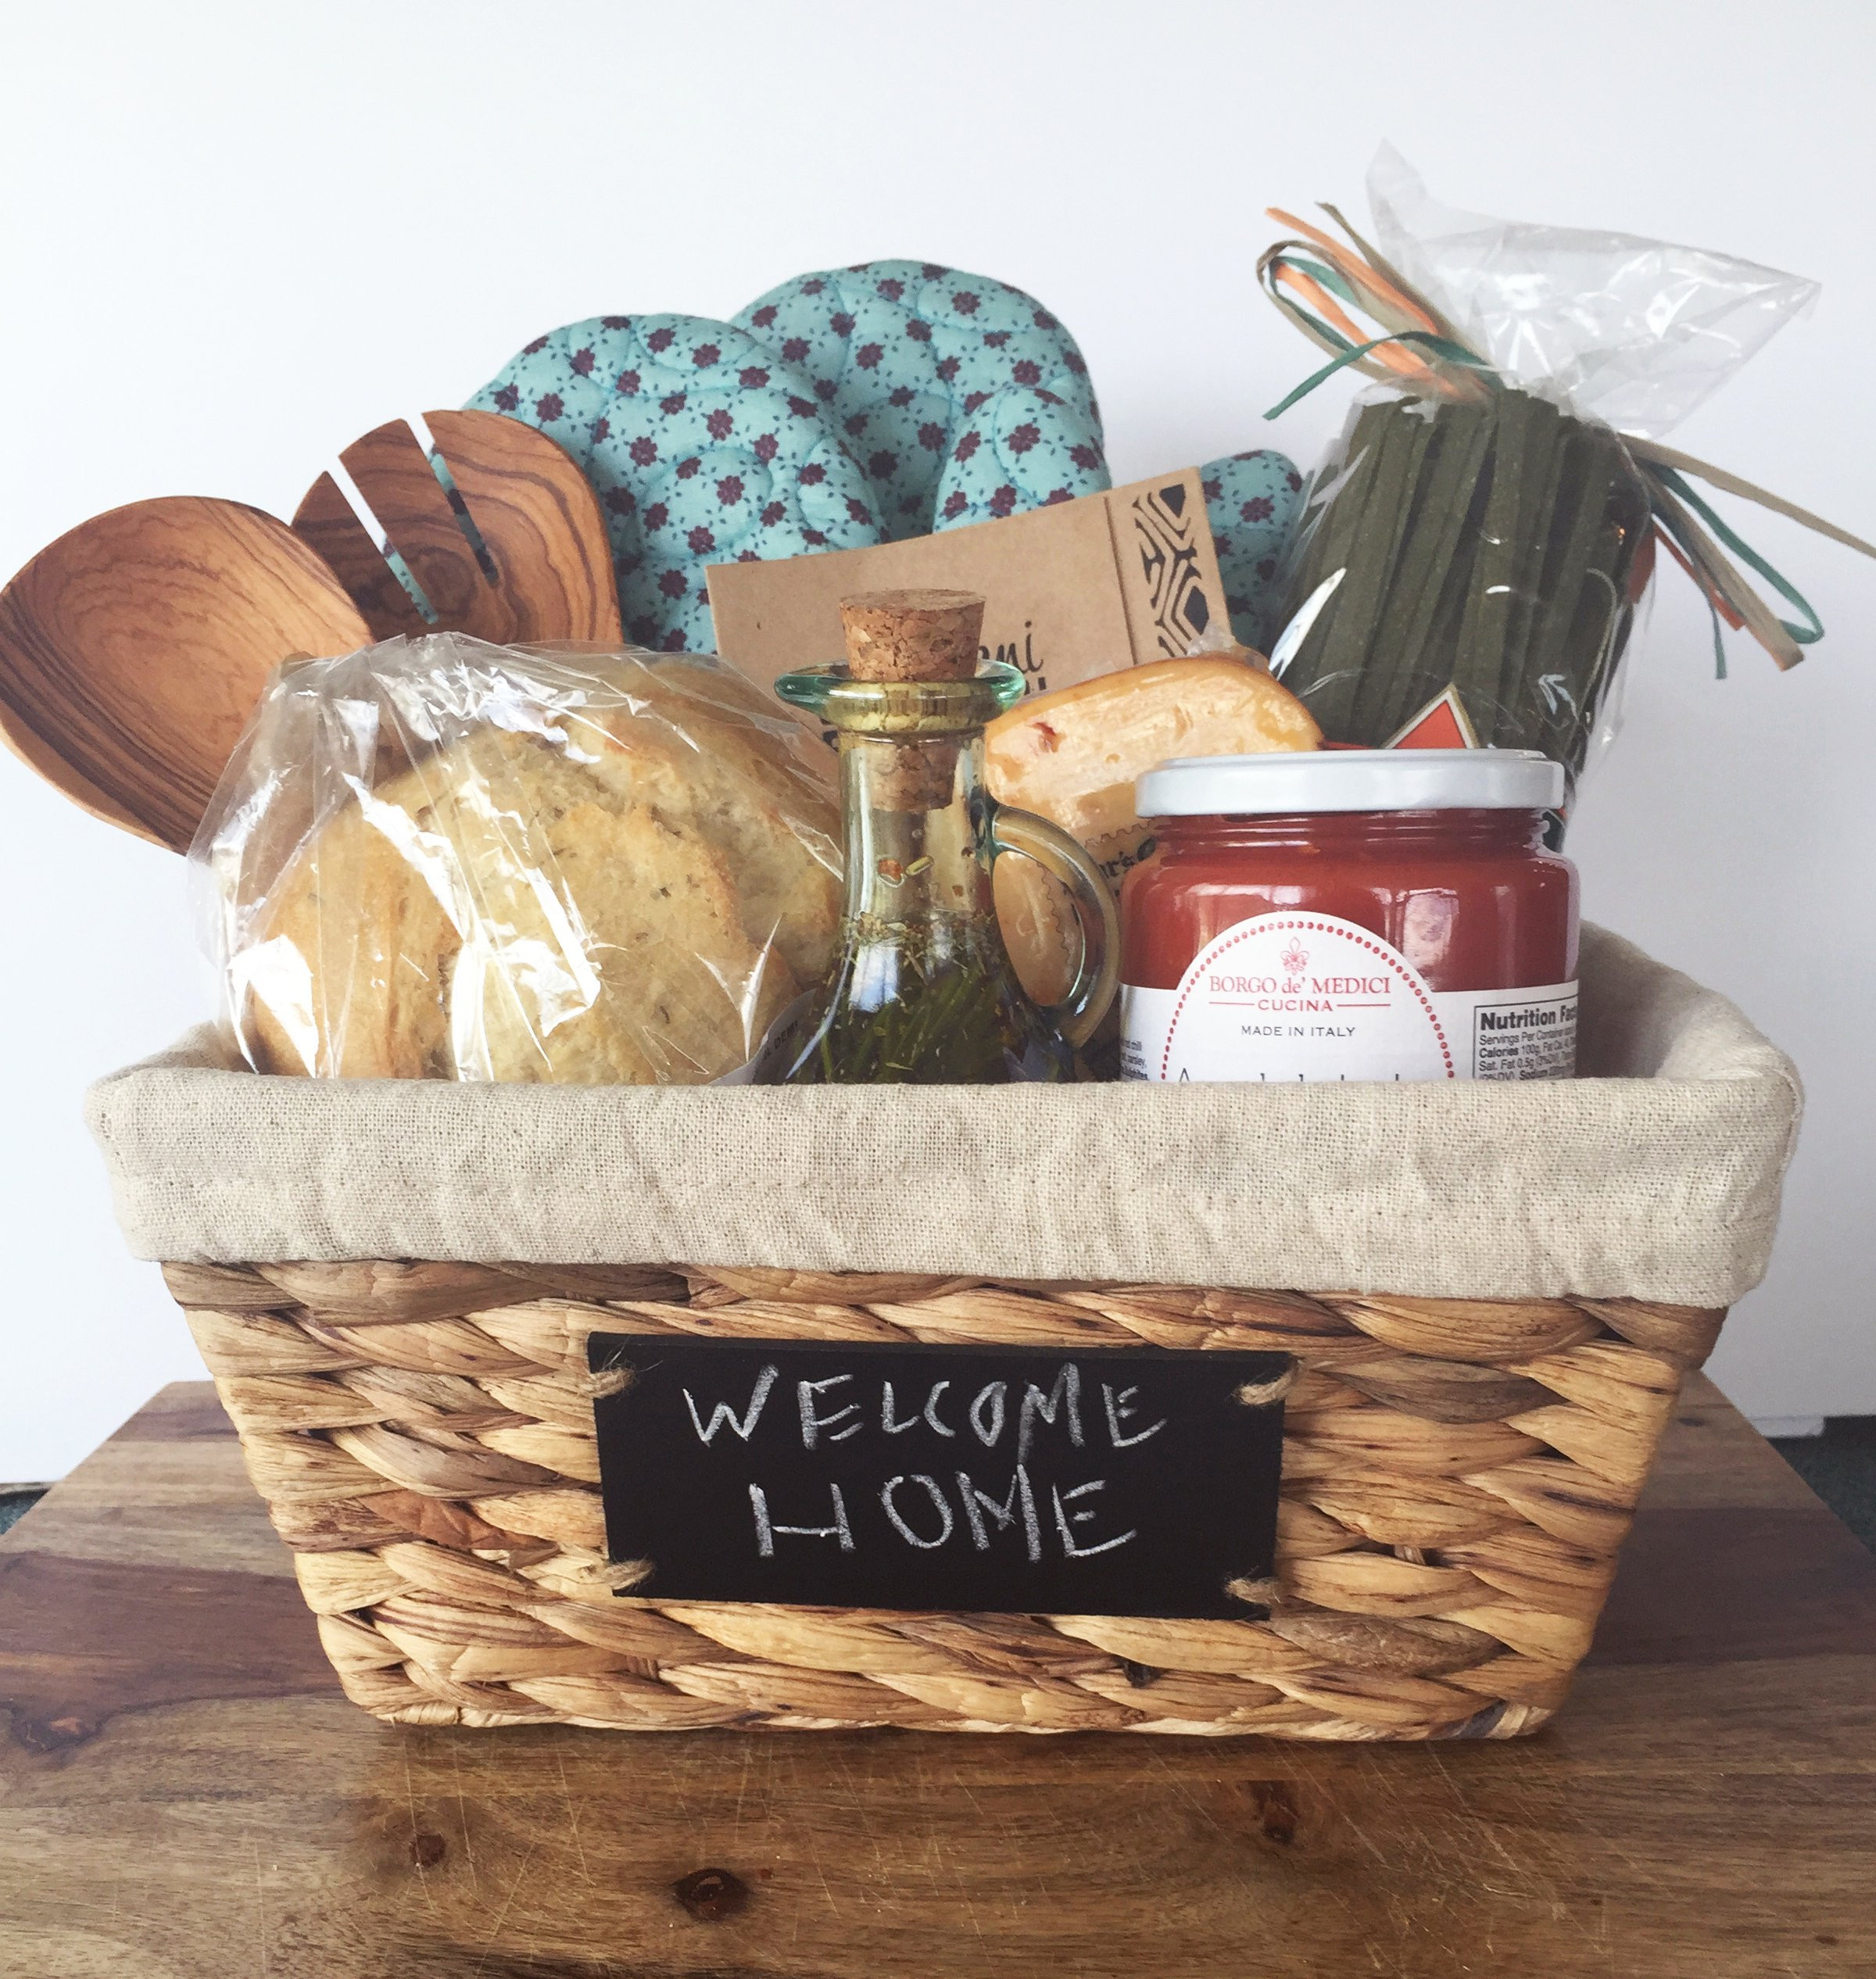 Cute Gift Basket Ideas
 DIY HOUSEWARMING GIFT BASKET T A S T Y S O U T H E R N